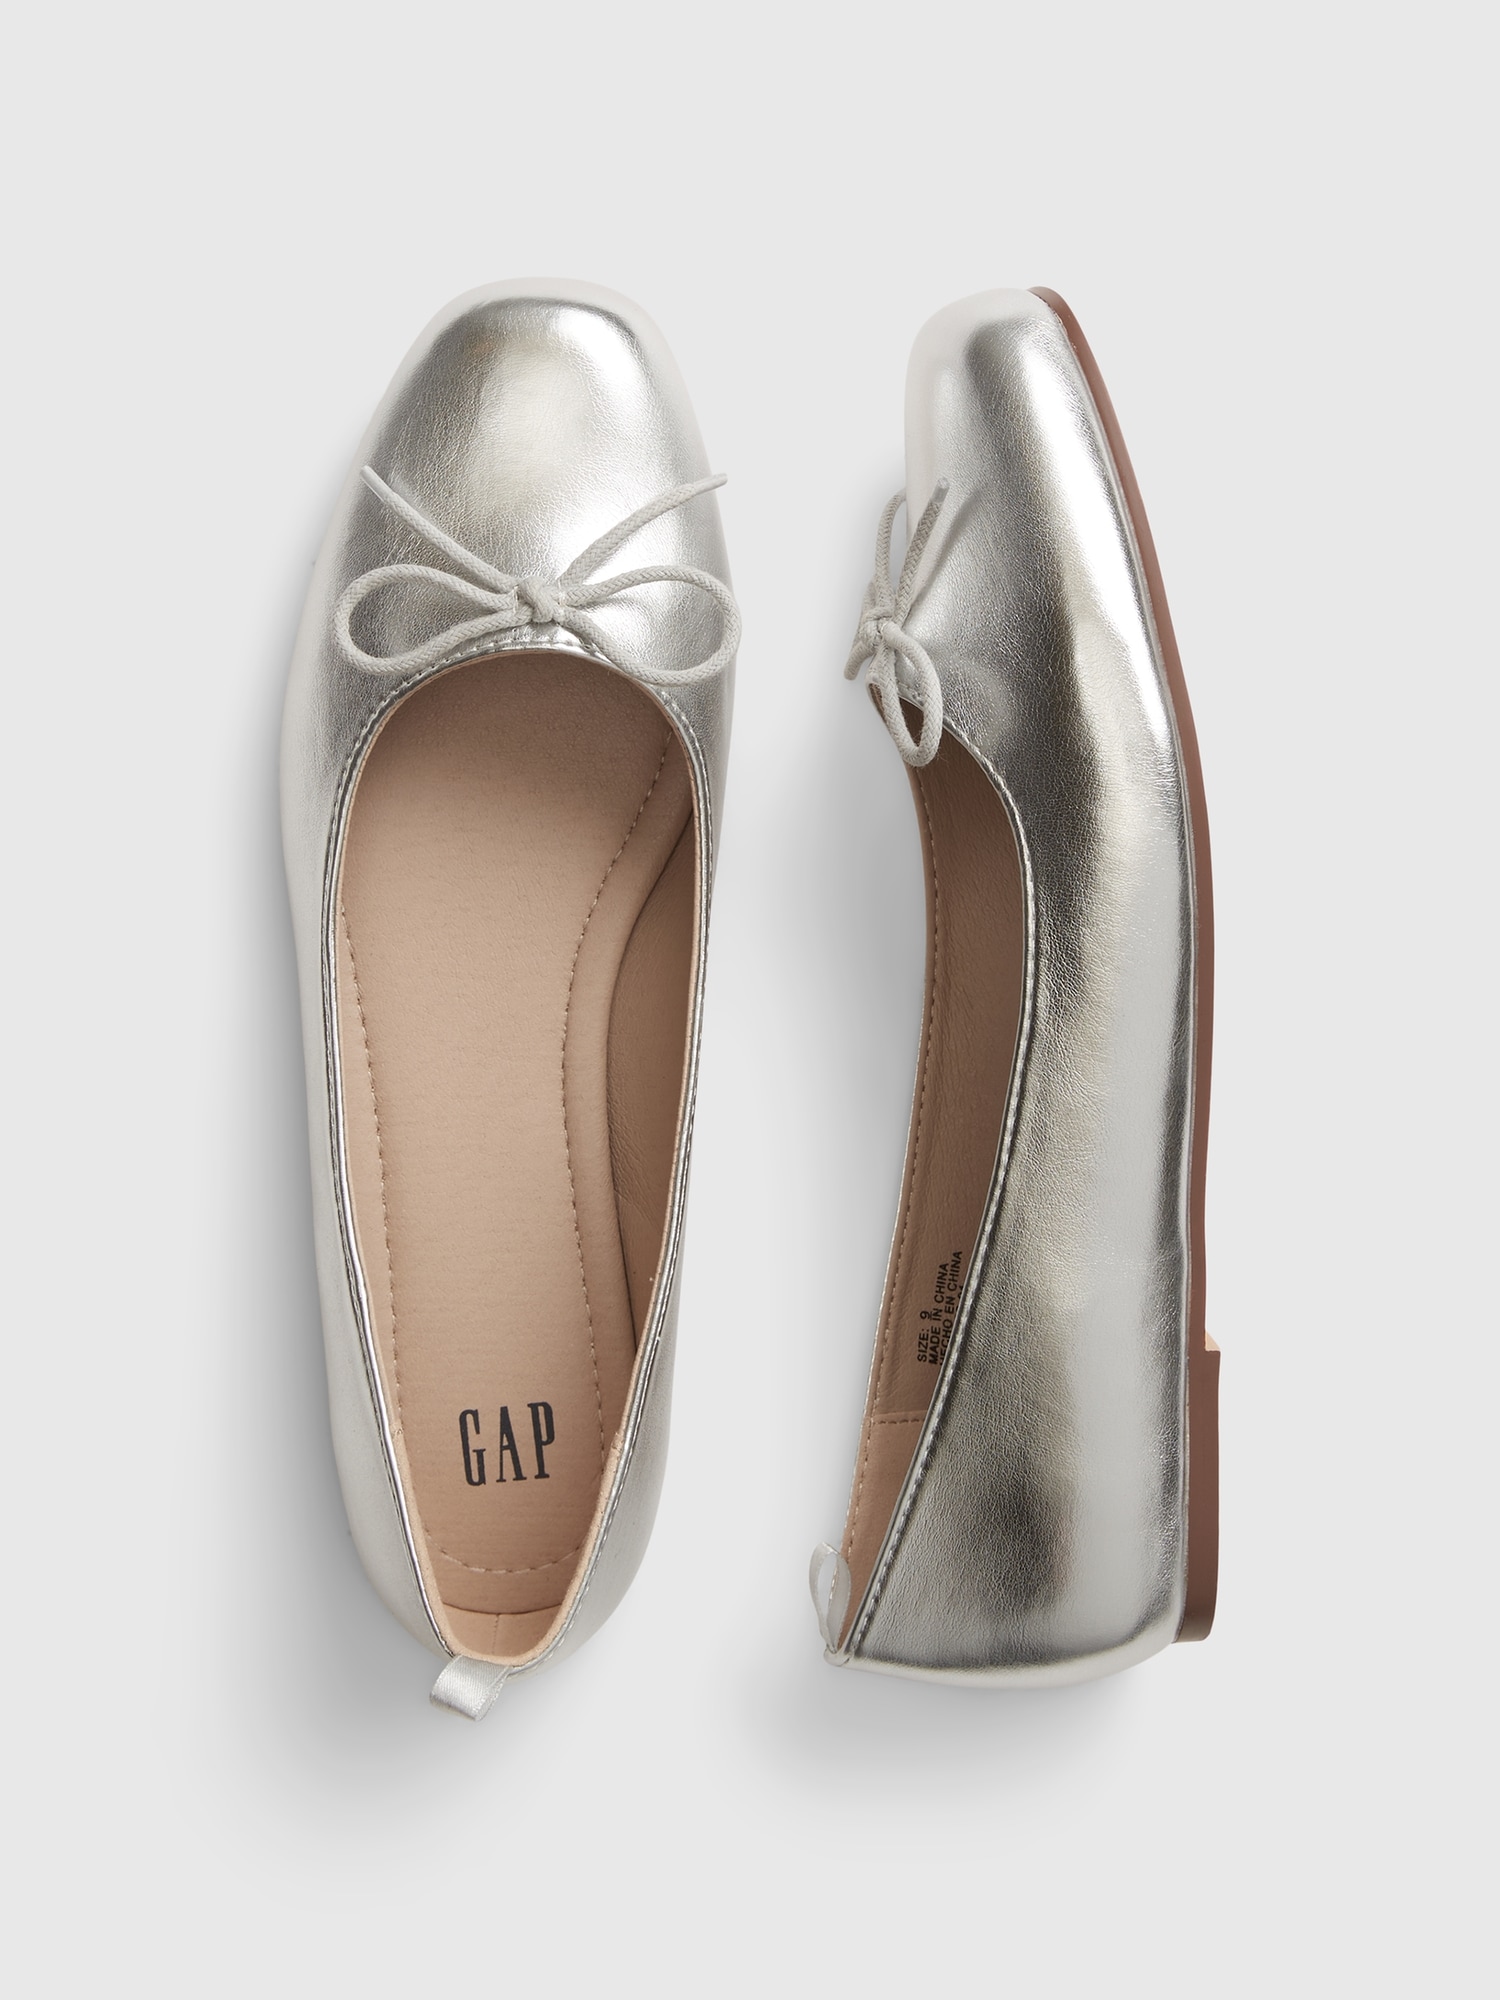 Essentials Belice Dark Bronze Ballet Flats Shoes Women Size 8 N -  beyond exchange